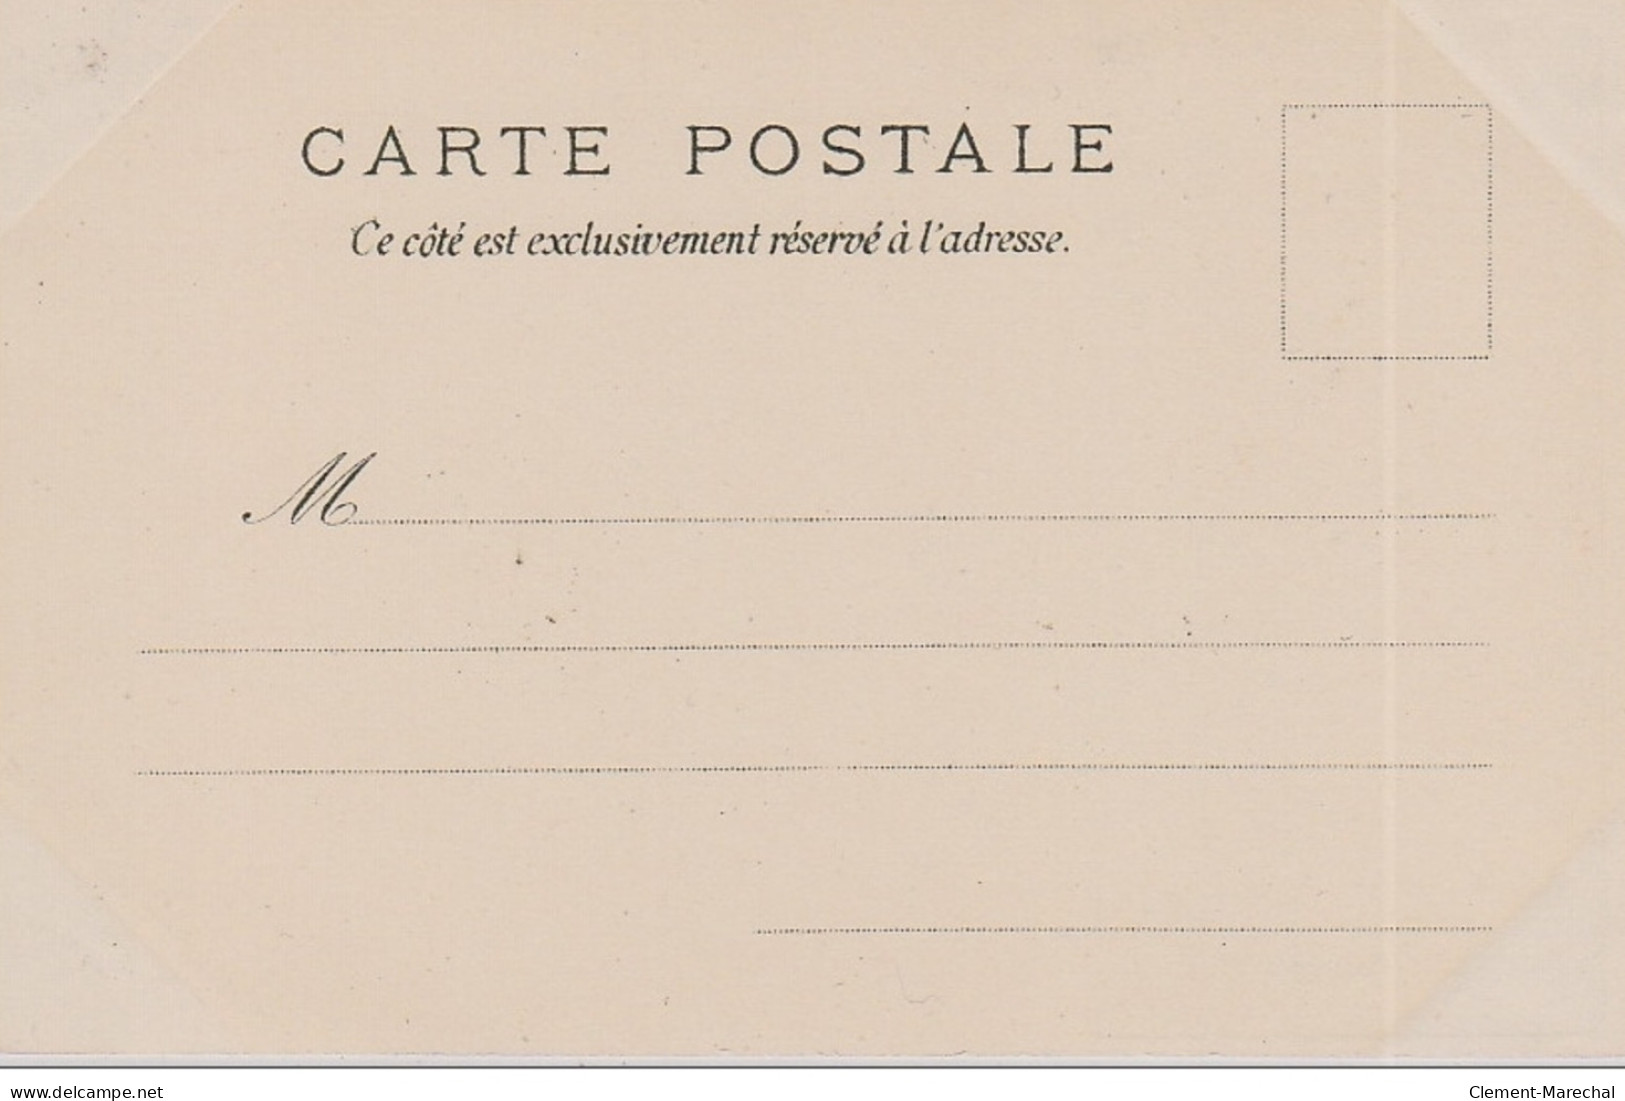 MUCHA Alphonse : série de 4 cartes postales "les Saisons" vers 1900 - bon état (marques d'album)